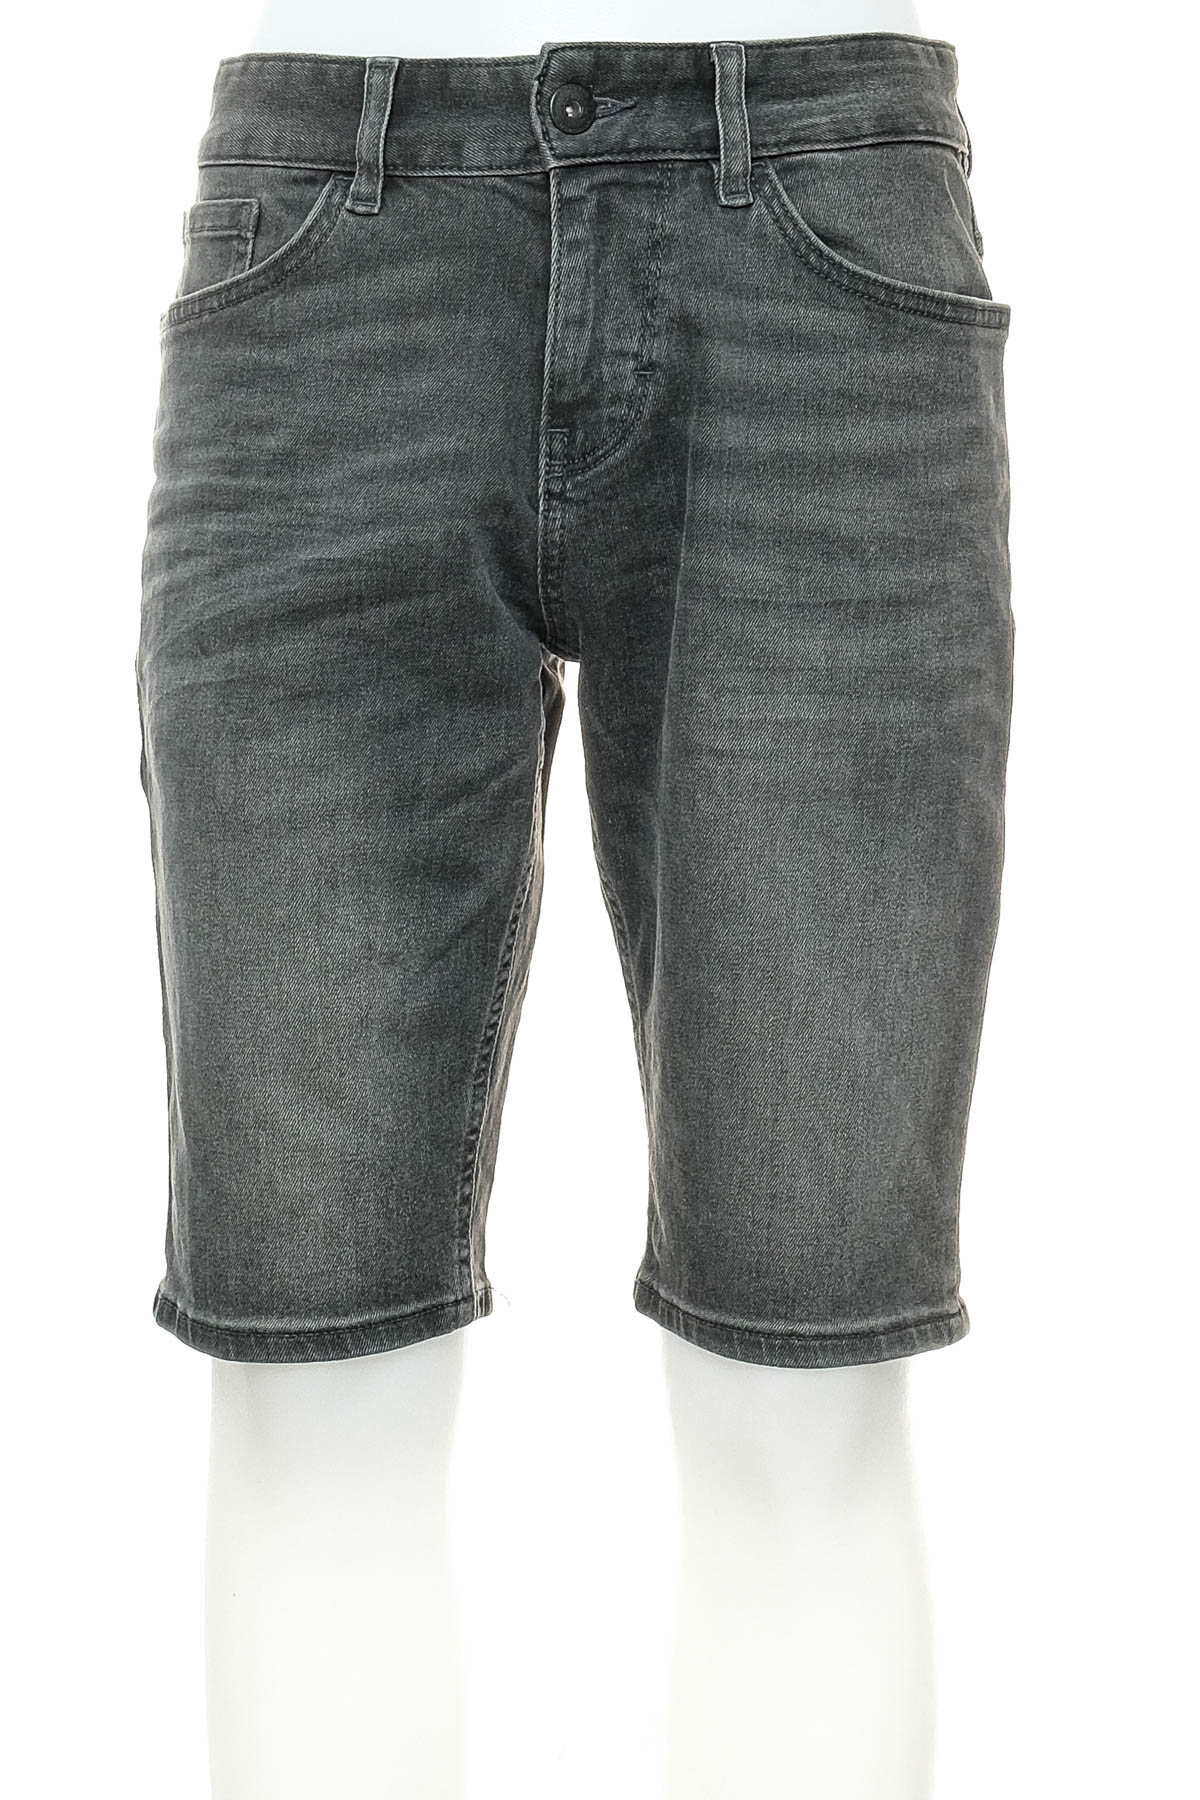 Men's shorts - TOM TAILOR - 0